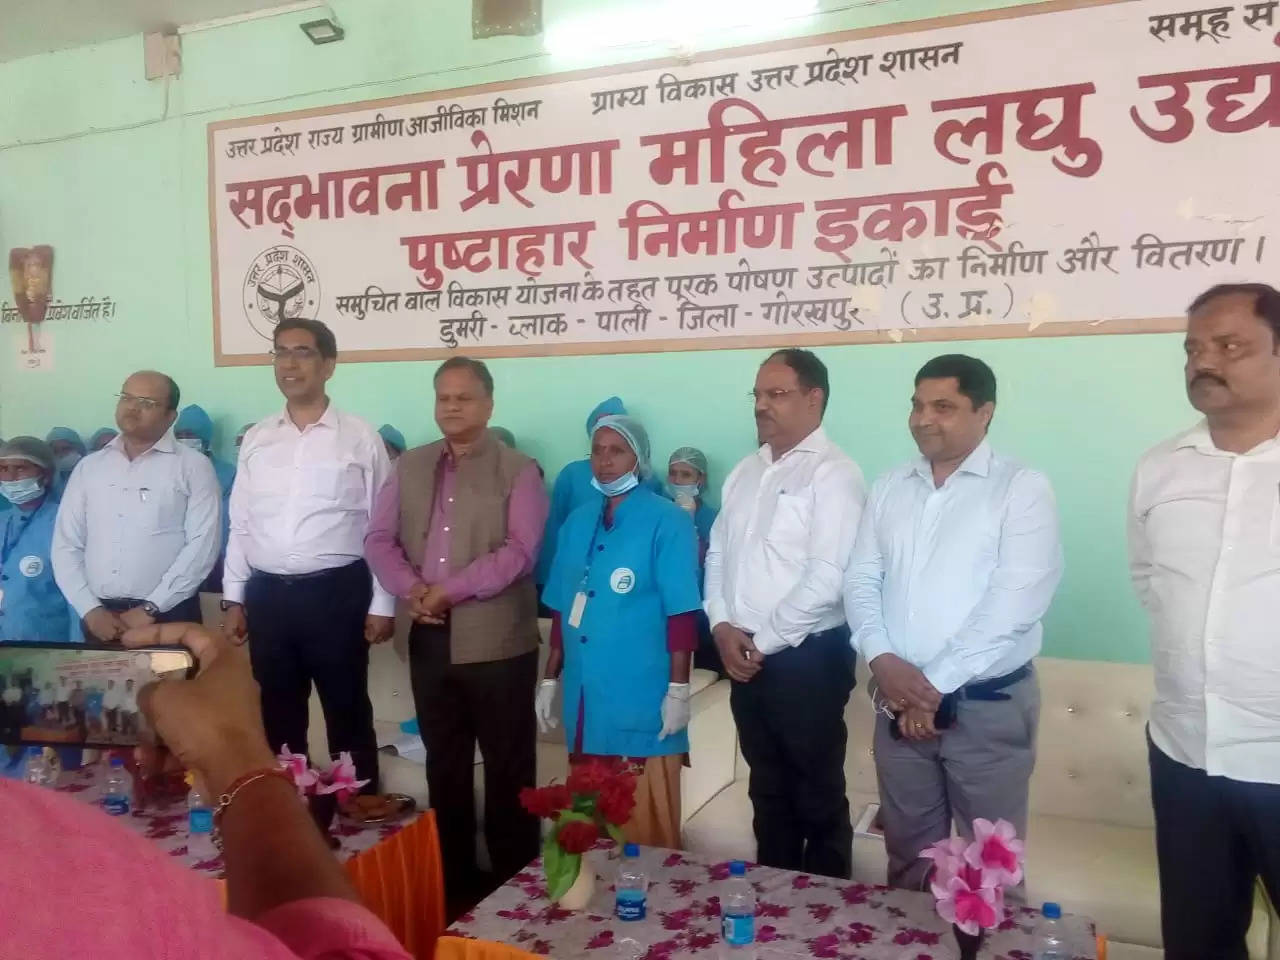 Gorakhpur News: पुष्टाहार लघु उद्योग प्लांट का कृषि उत्पादन आयुक्त ने द्वारा किया निरीक्षण